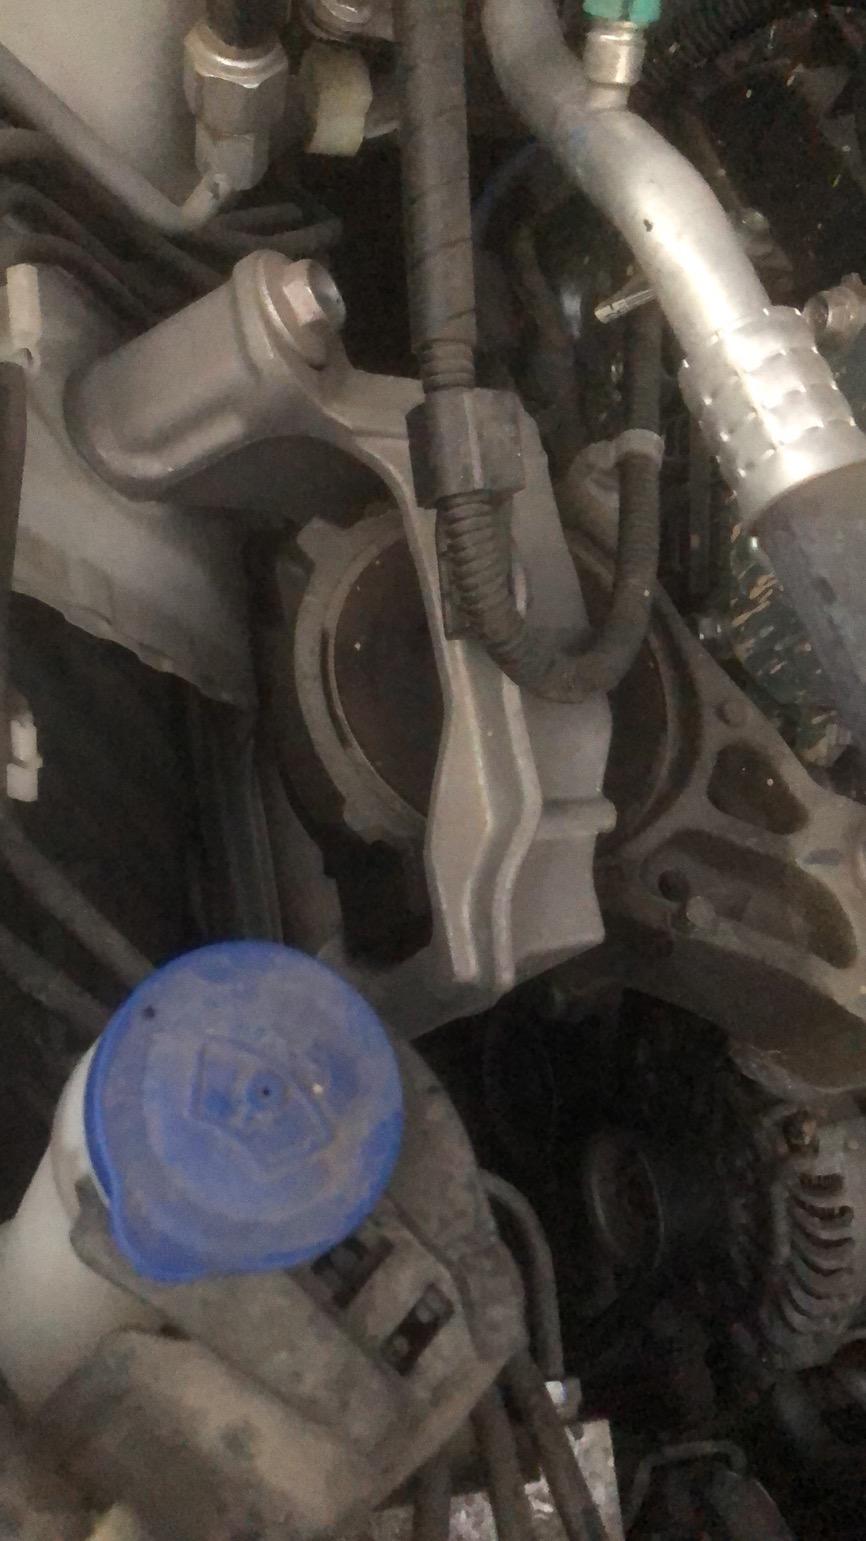 马自达3 昂克赛拉 昂克赛拉2016款 漏了 玻璃水附近 有个碗大的黑色橡胶类东西 不知道是什么 漏了类似机油的东西 漏